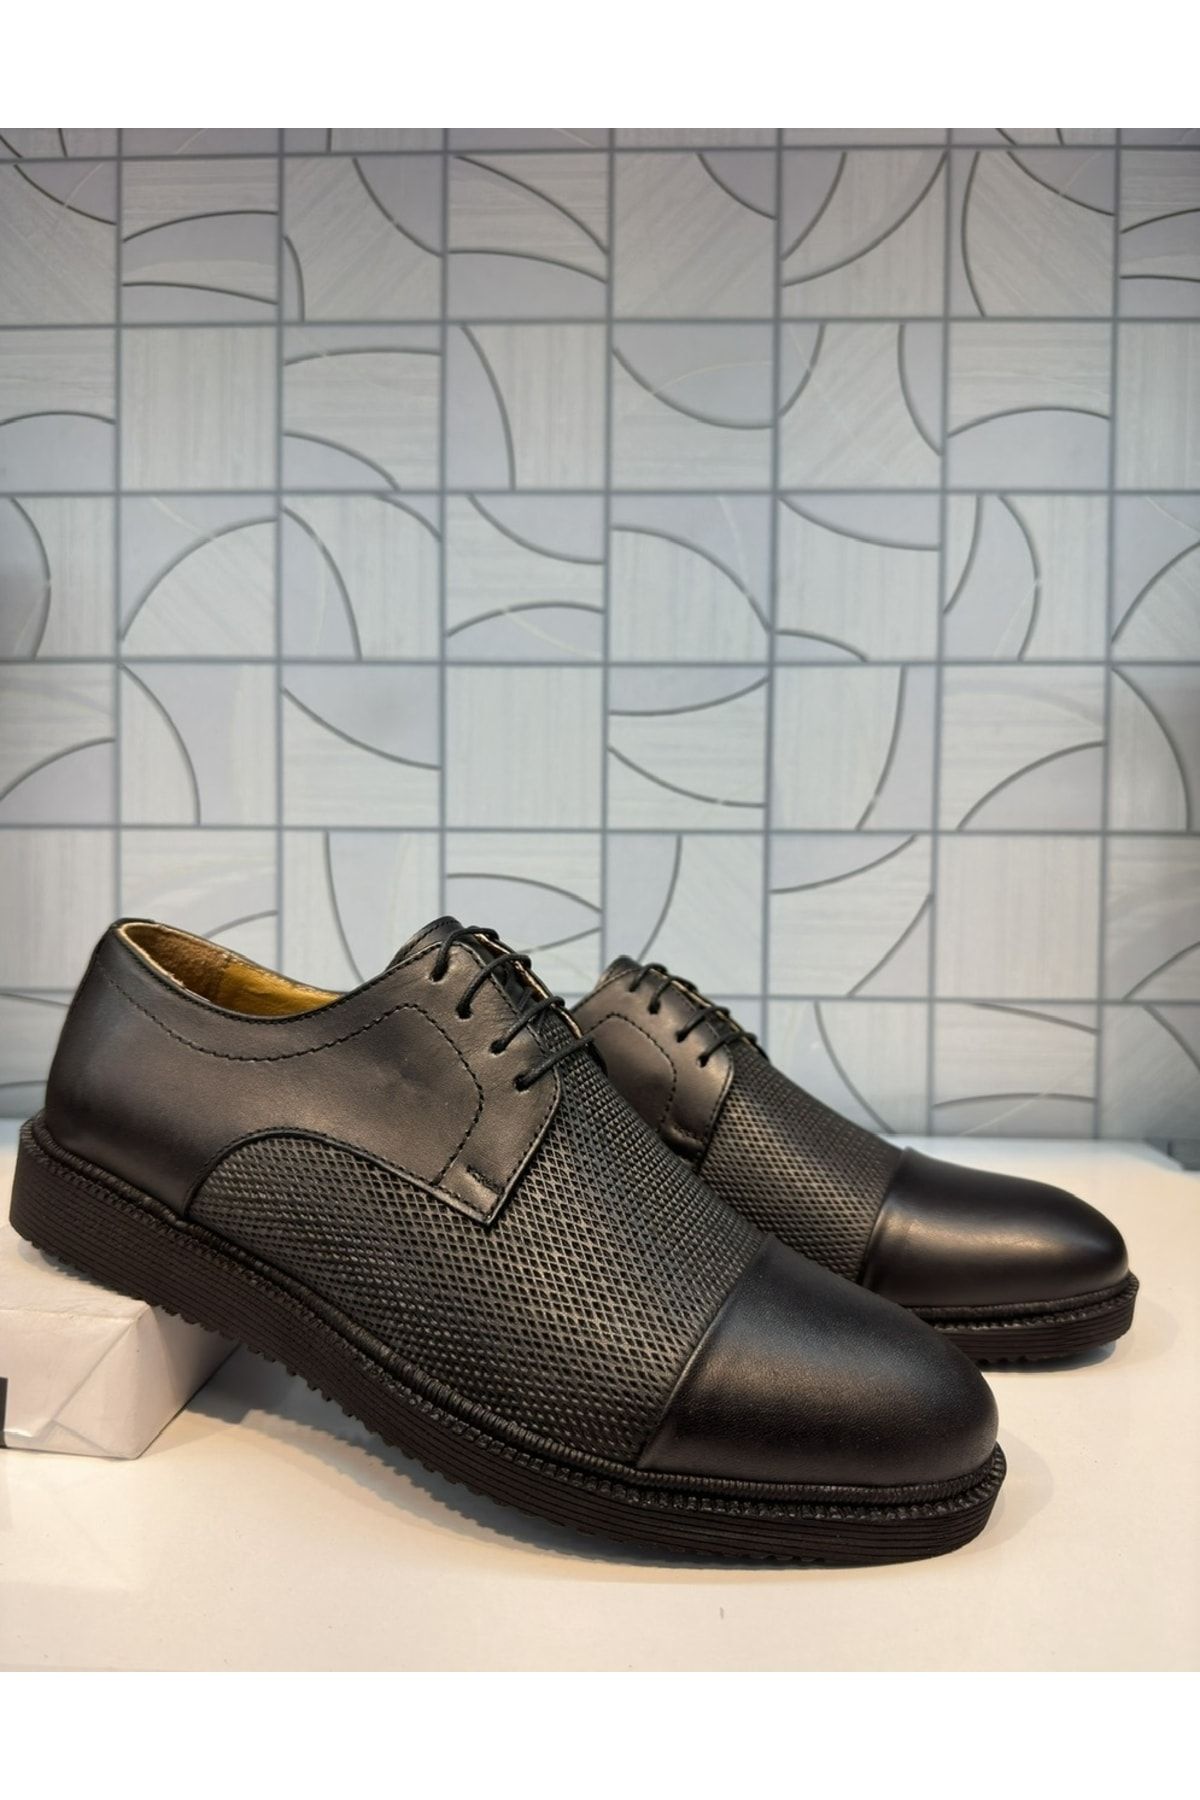 Anıl Ayakkabı Ayalp 1495 Erkek Siyah Hakiki Deri Baskı Detay Bağcıklı Rahat Hafif Casual Klasik Ayakkabısı